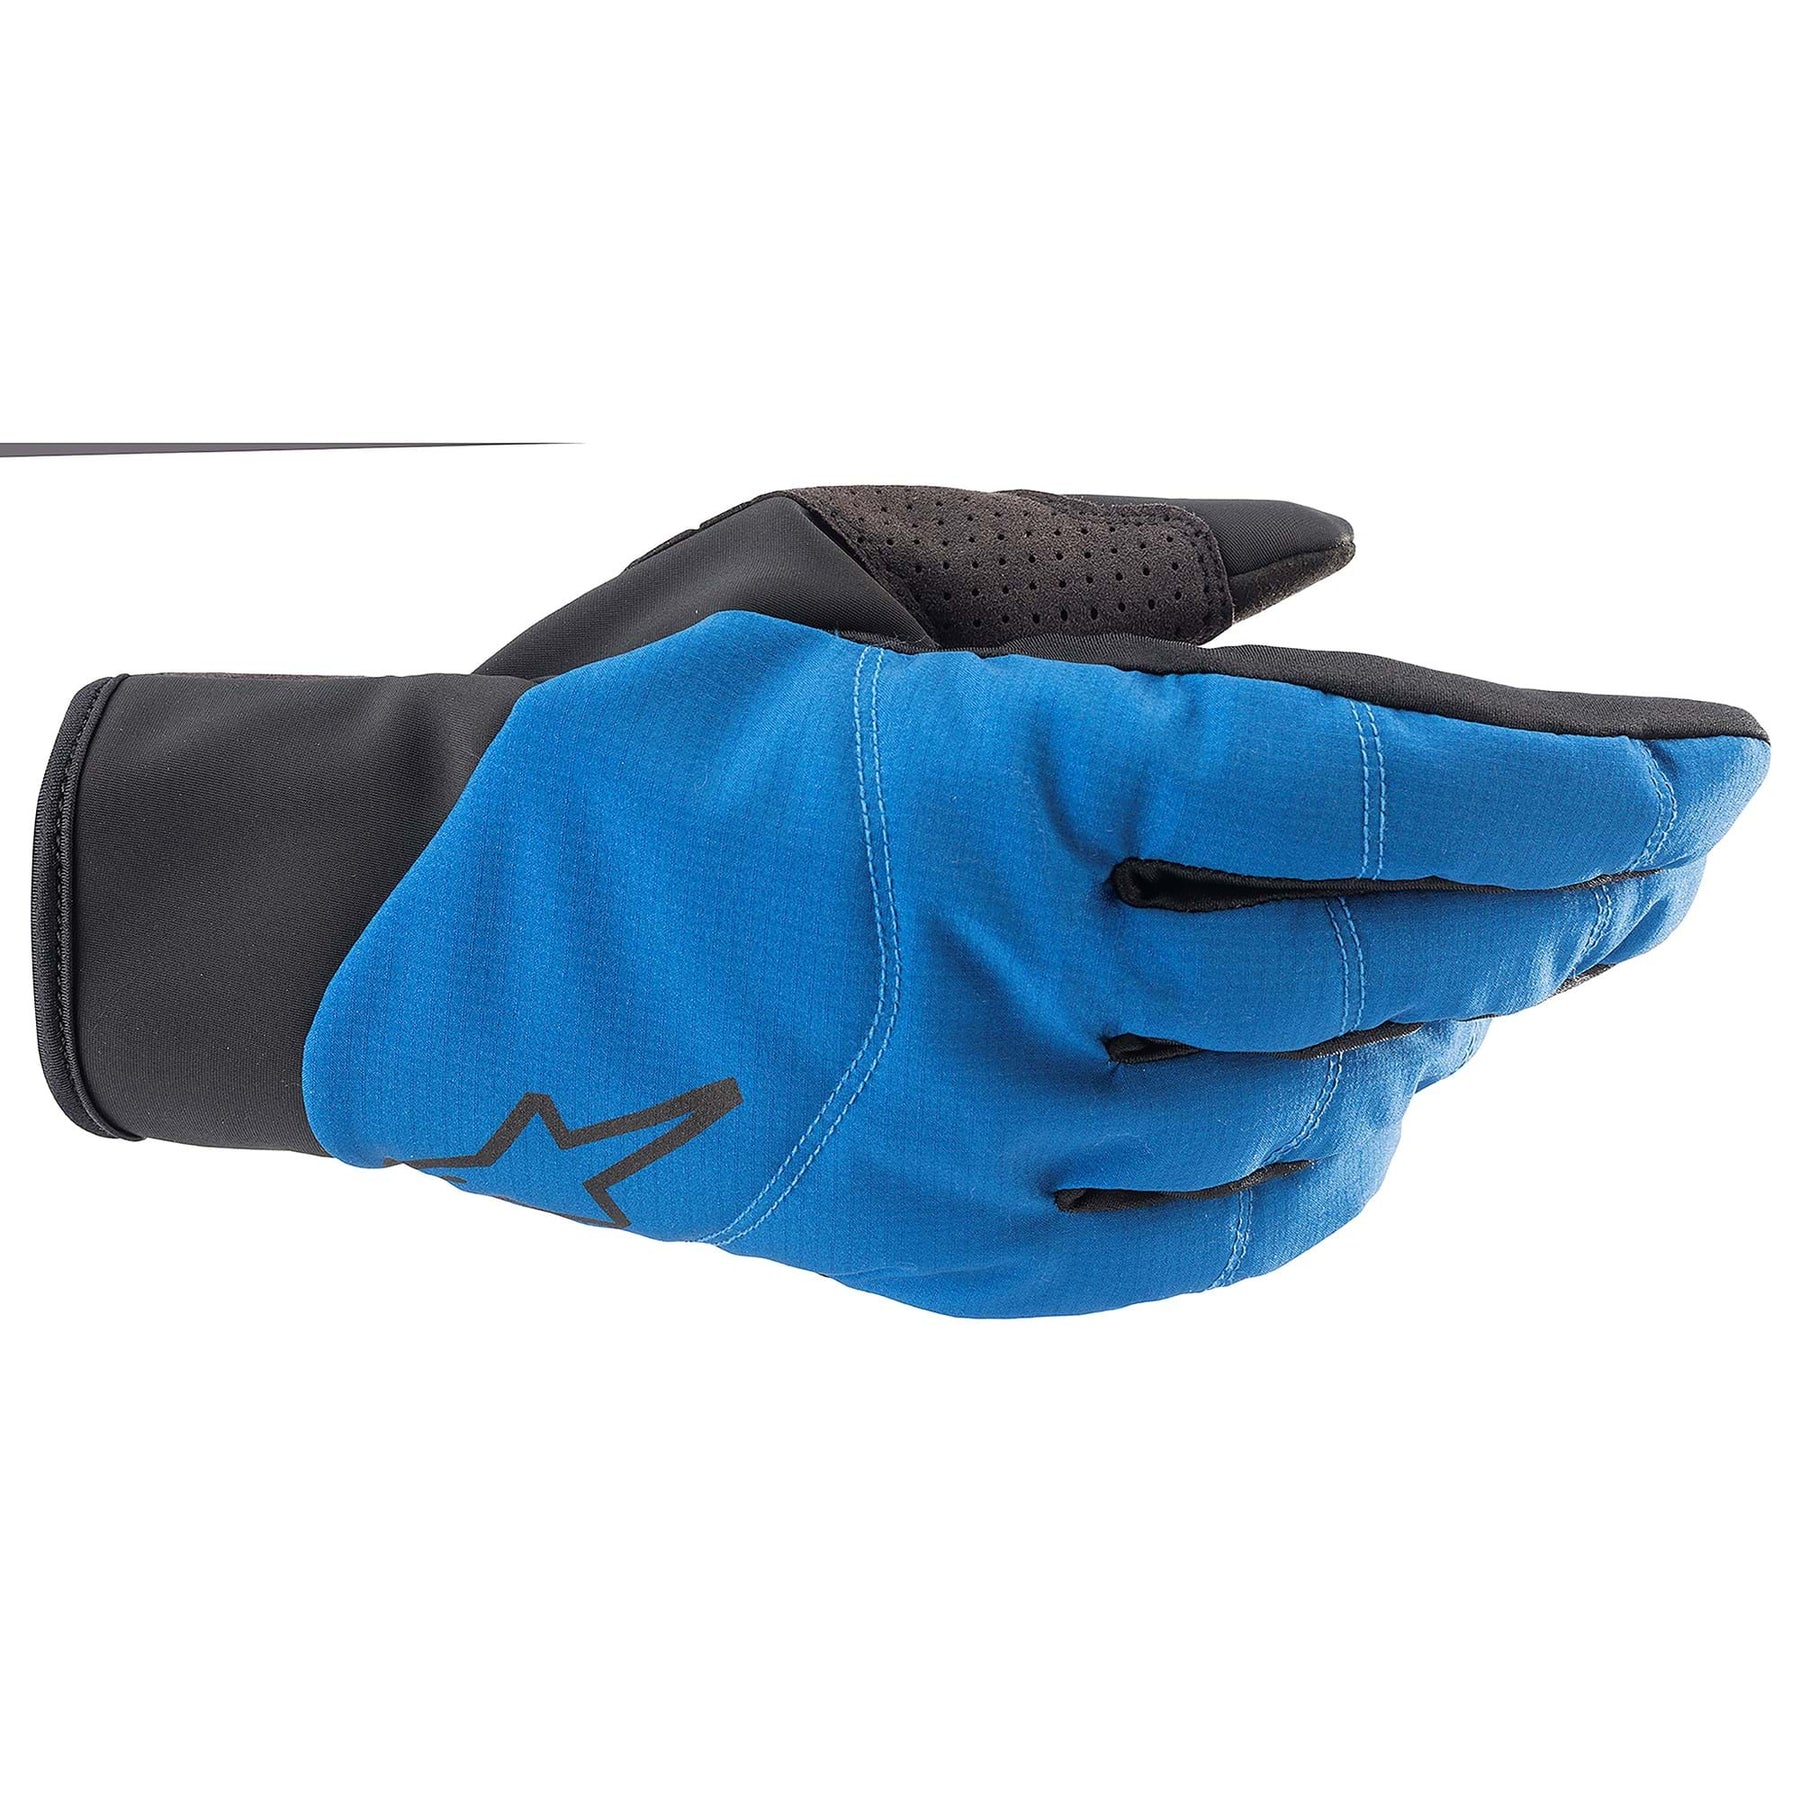 Alpinestars Denali 2 Gloves Mid Blue/Black/Coral Fluo 2XL